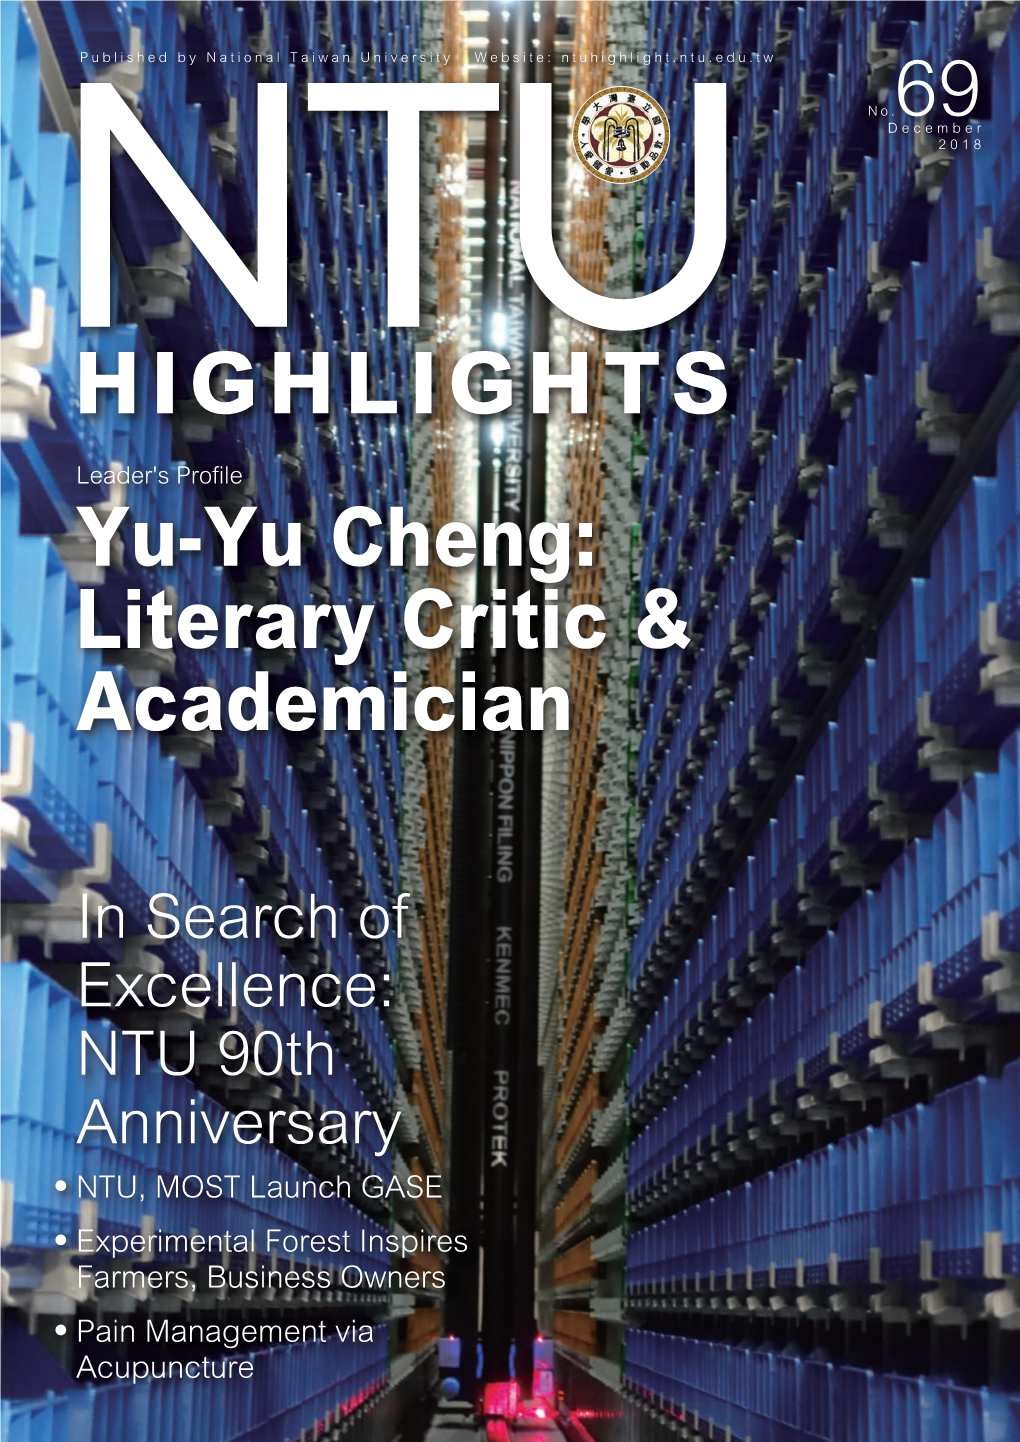 Yu-Yu Cheng: Literary Critic & Academician